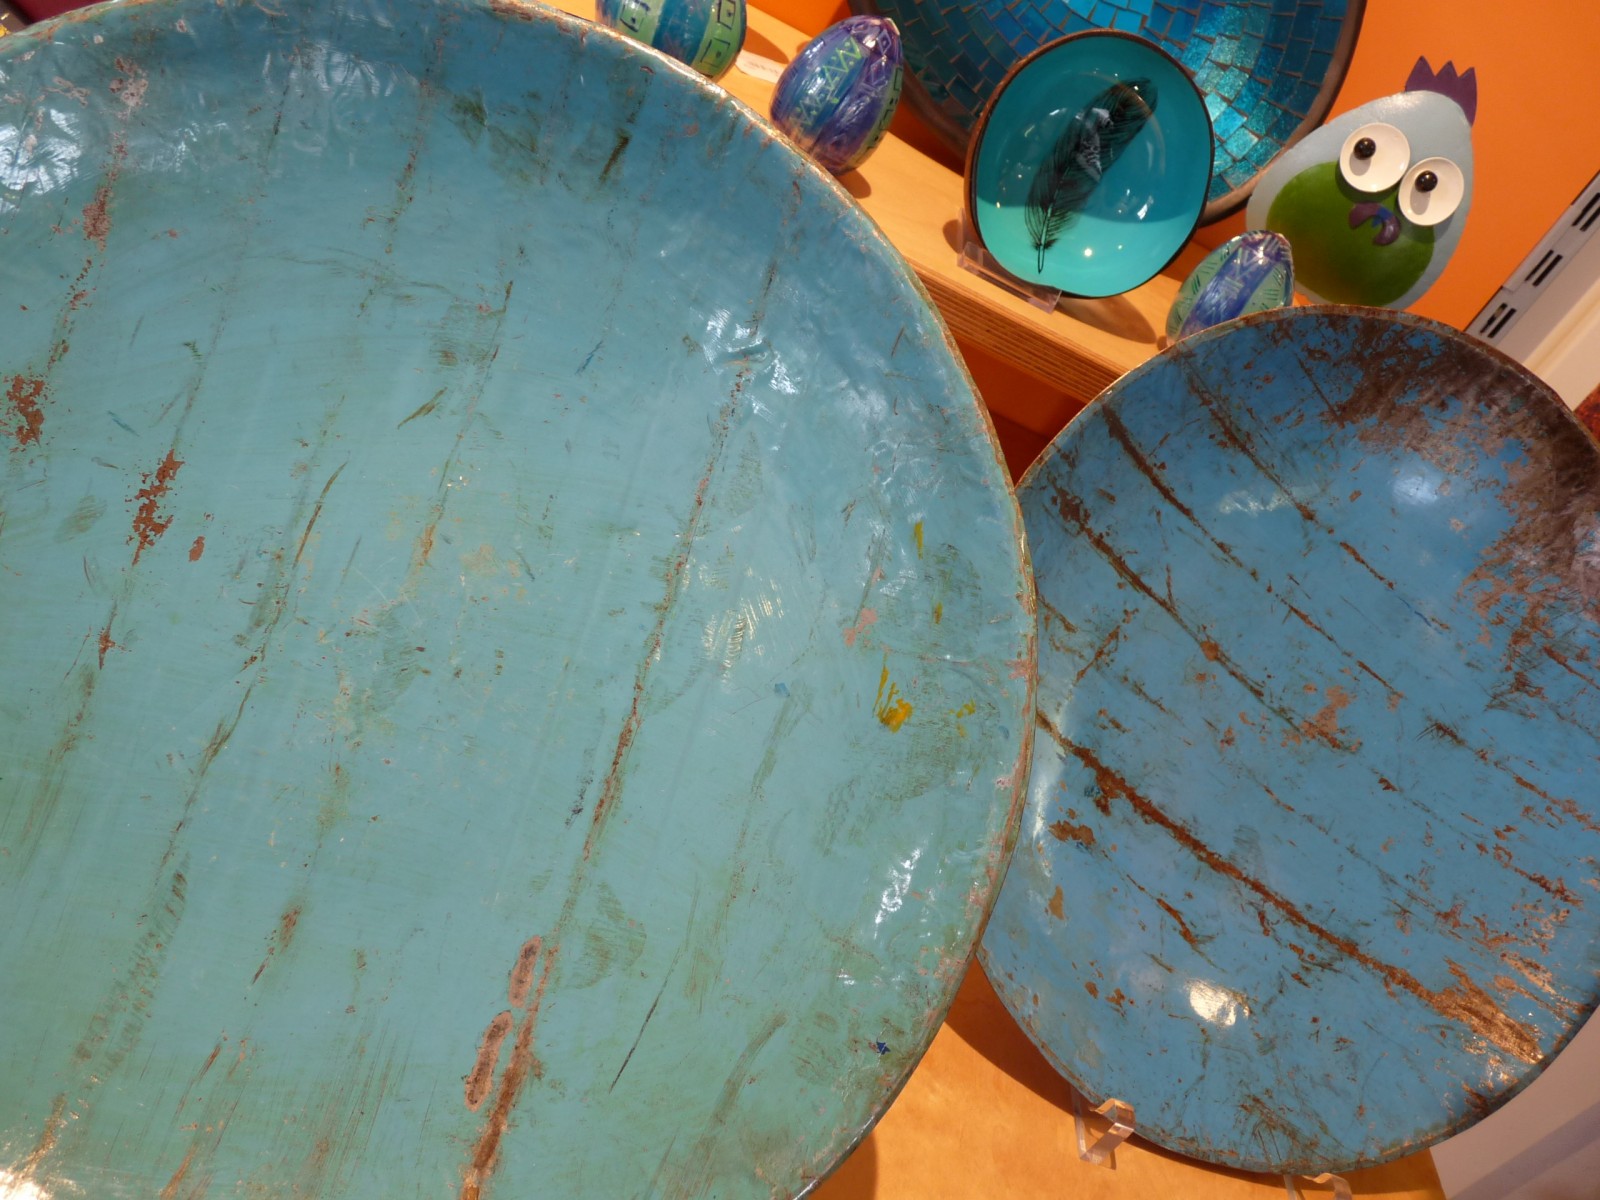 NEU Dekorative Schalen aus recycelten Ölfässern (Burkina Faso) - auch in Rottönen erhältlich